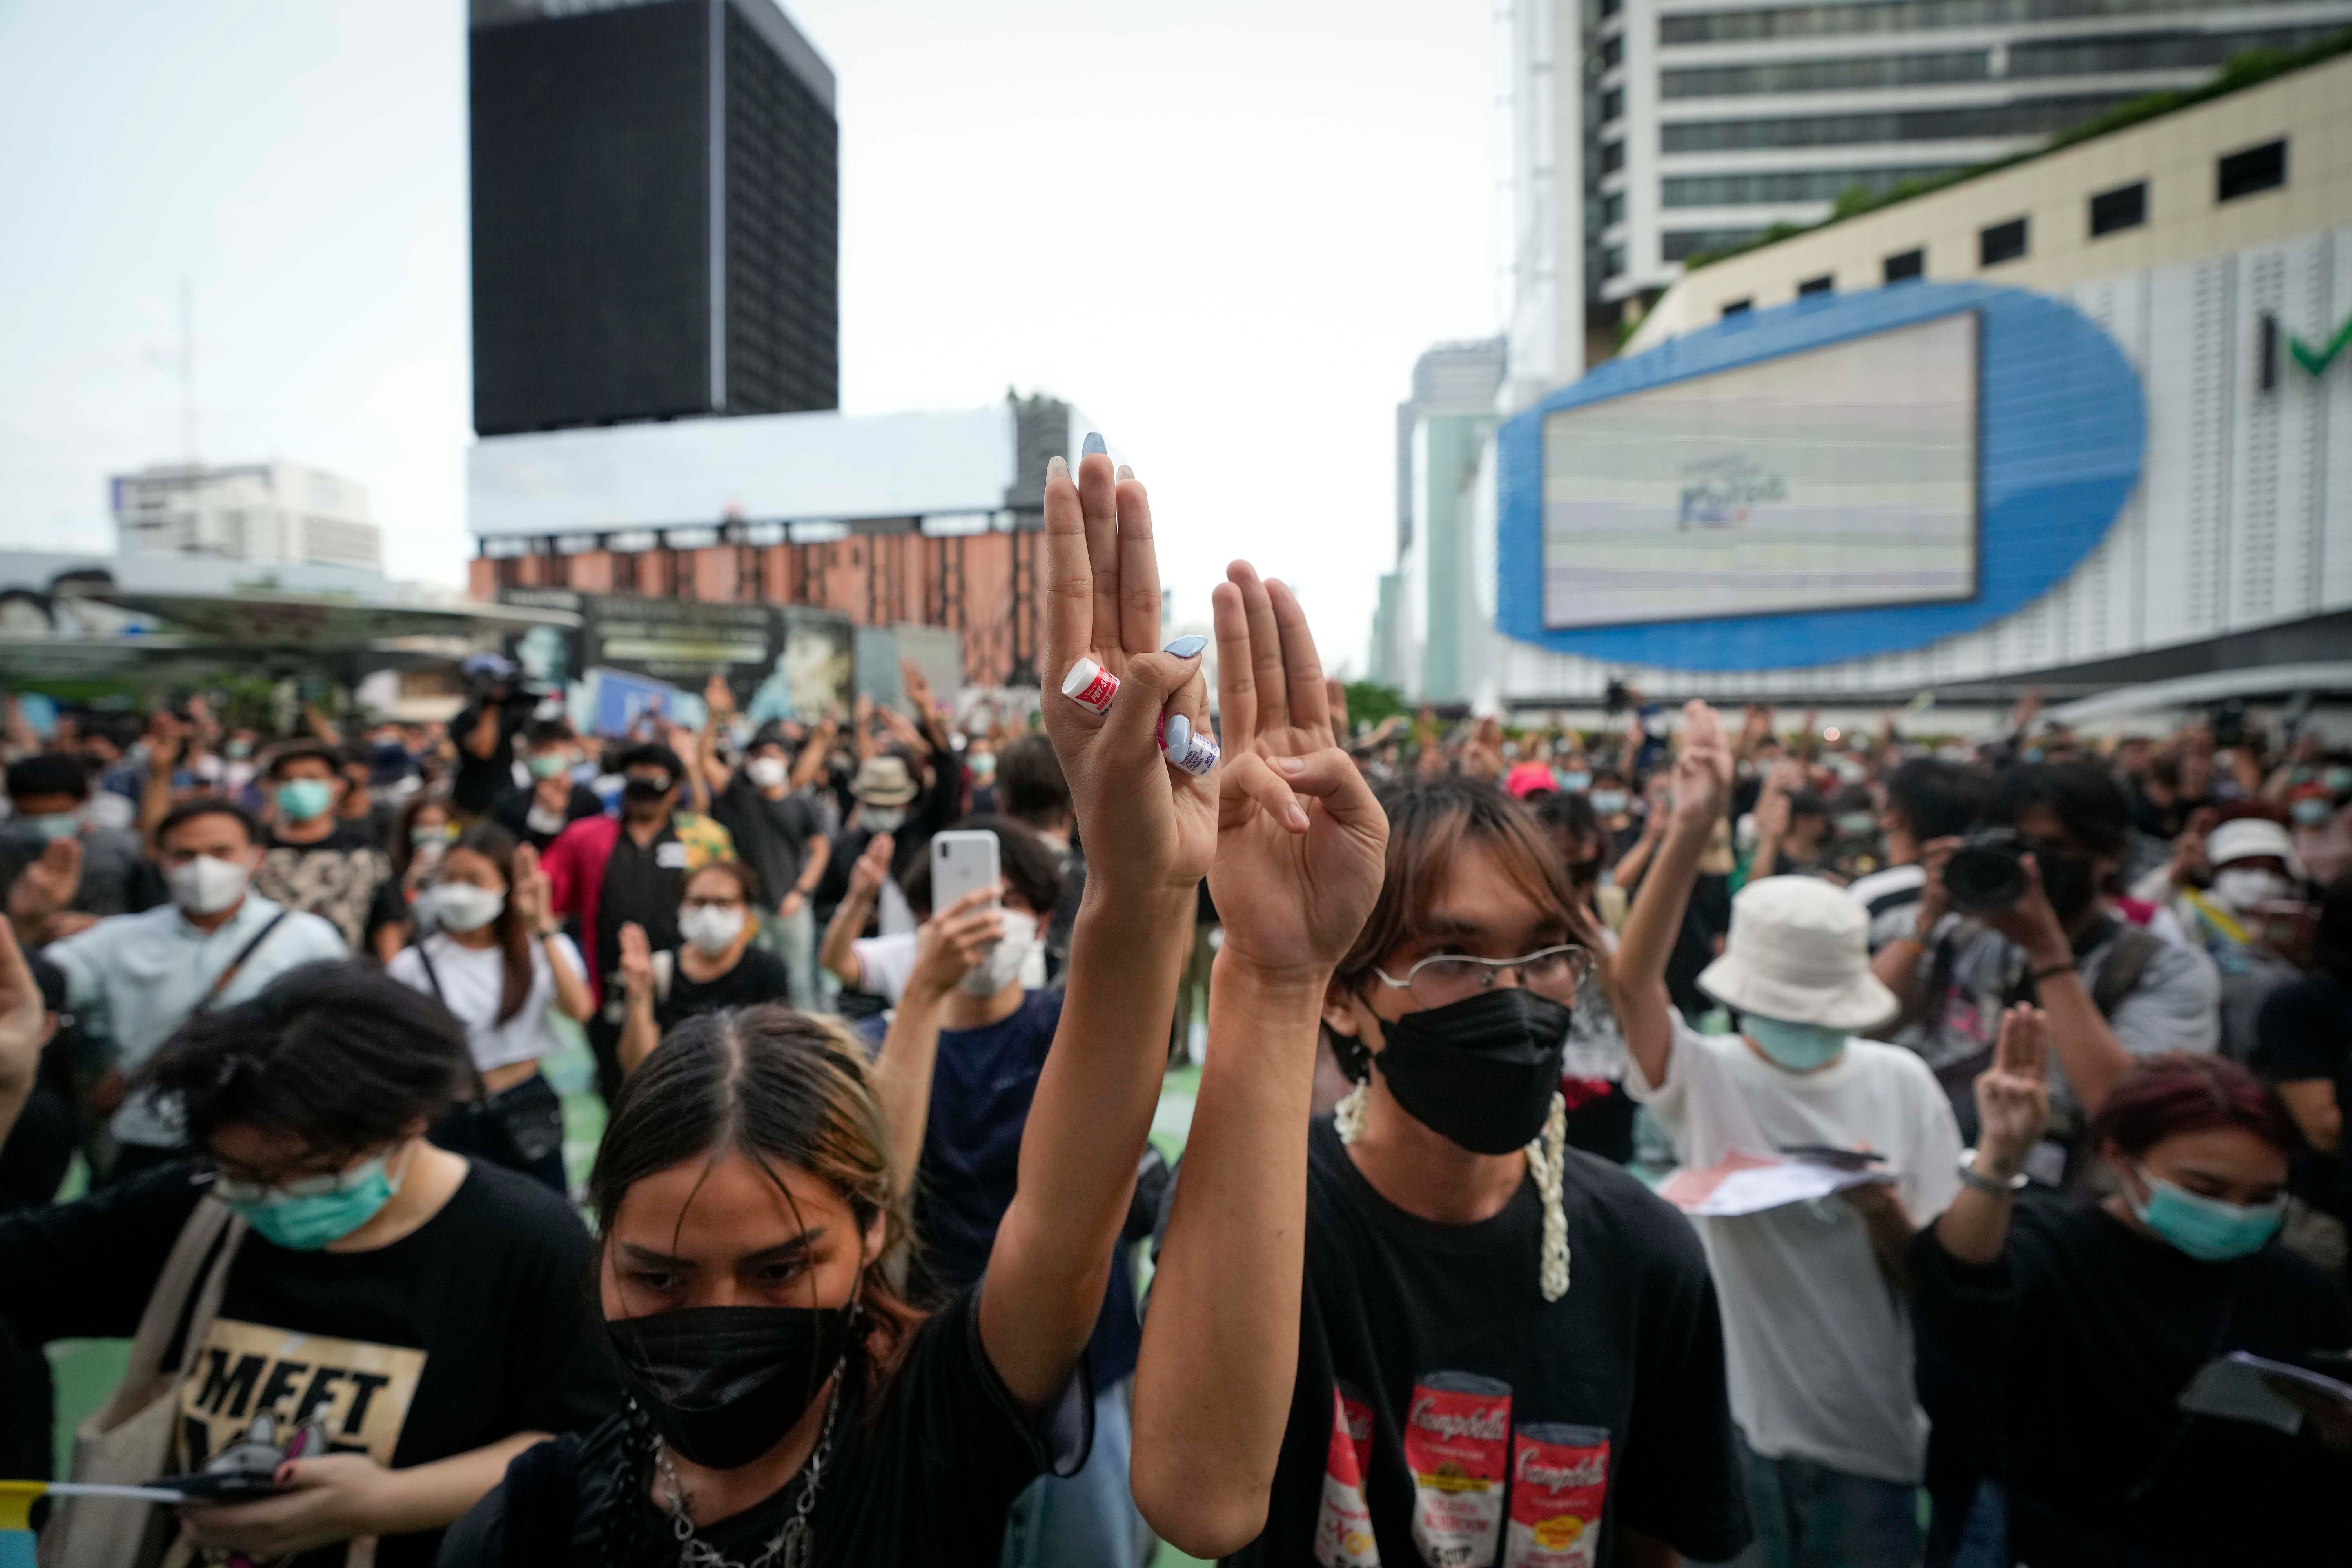 ผู้ประท้วงเรียกร้องประชาธิปไตยชูสามนิ้วเป็นสัญลักษณ์การต่อต้านที่กรุงเทพฯ  ประเทศไทย 24 มิถุนายน 2564